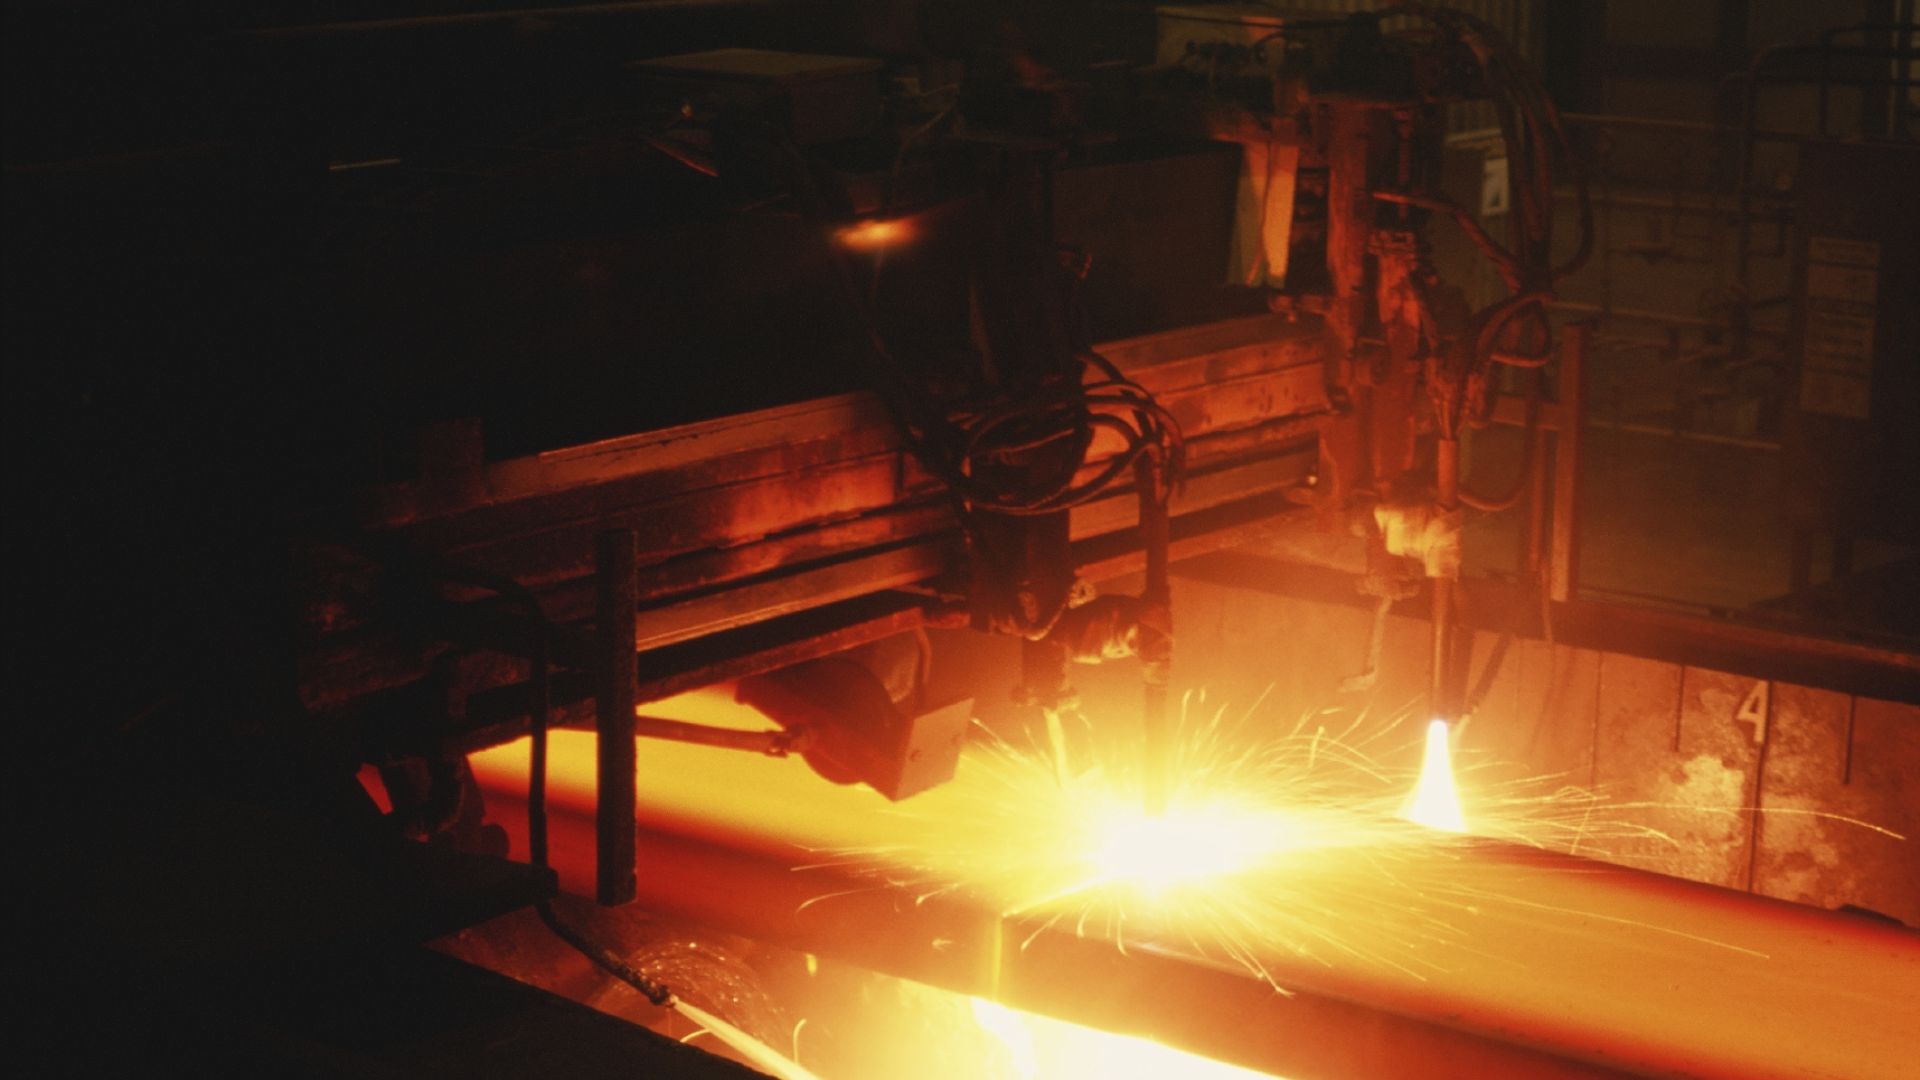 Stainless Steel Metallurgy